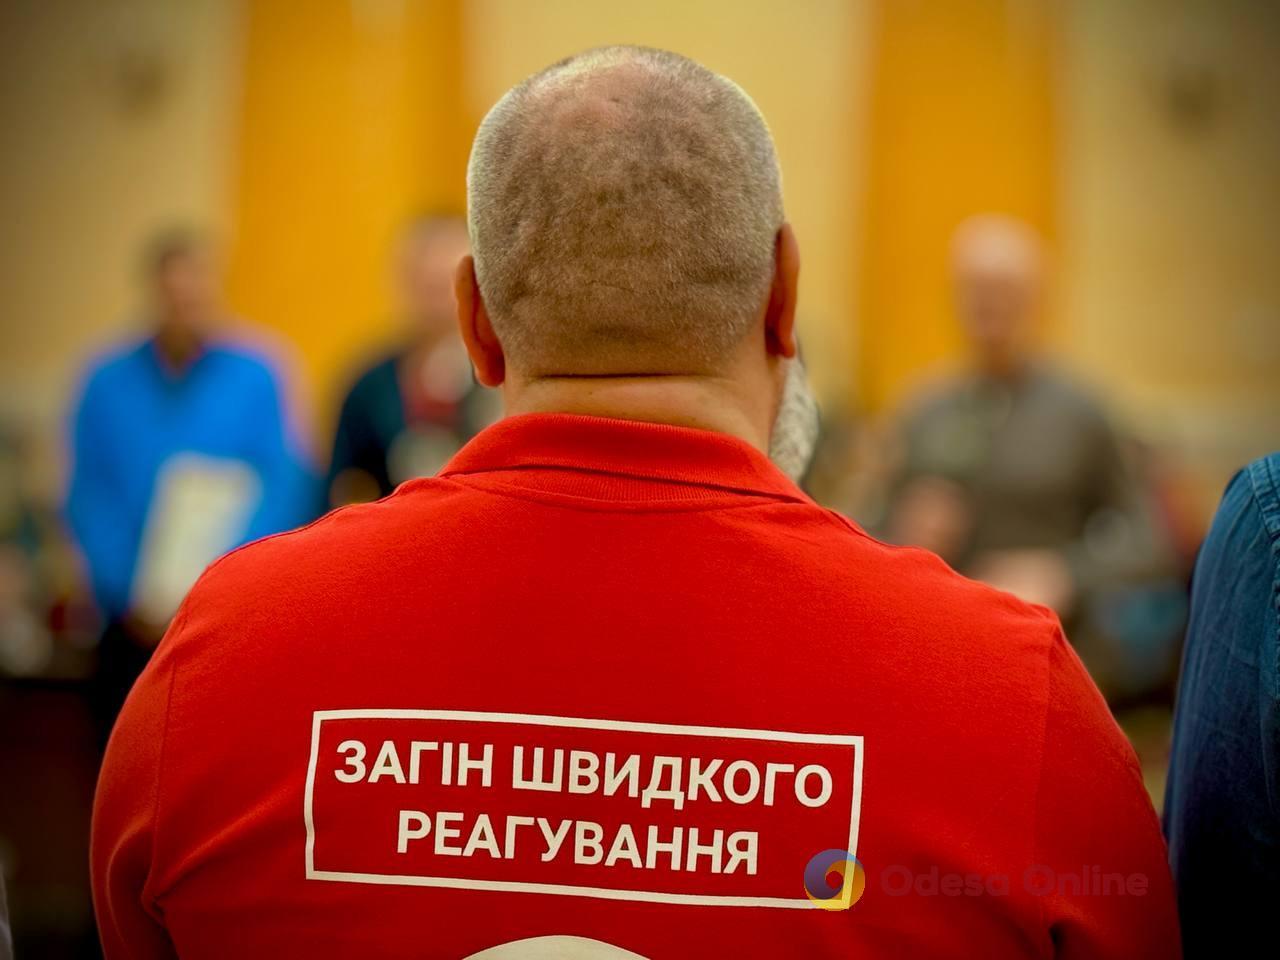 Одесские спасатели получили почетные награды